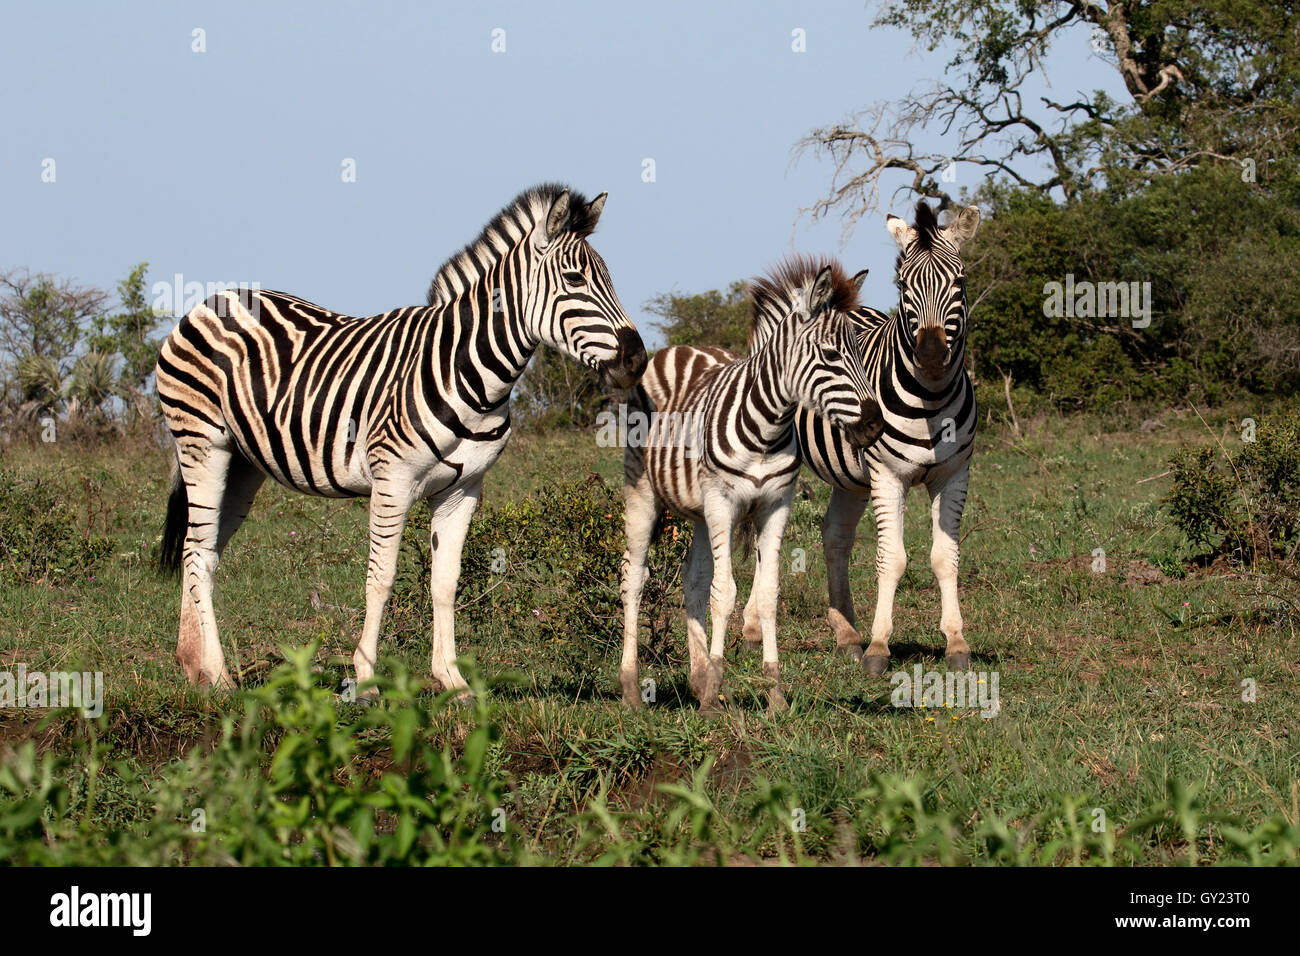 Llanuras, cebra Cebra común o Burchells, zebra Equus quagga, grupo de mamíferos, Namibia, agosto de 2016 Foto de stock